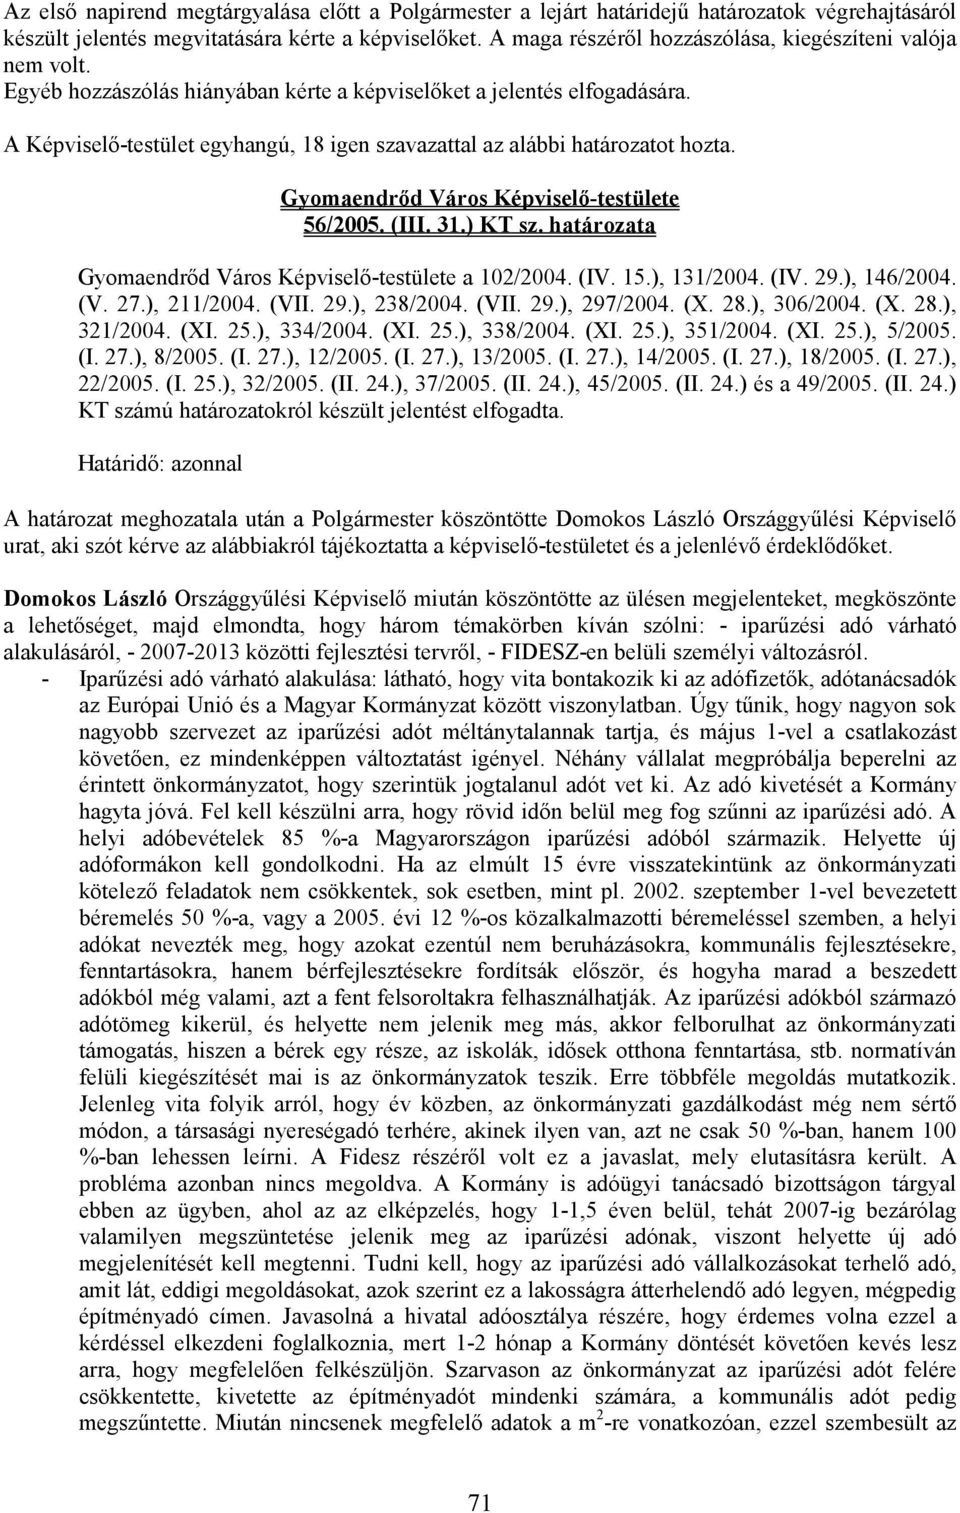 A Képviselı-testület egyhangú, 18 igen szavazattal az alábbi határozatot hozta. 56/2005. (III. 31.) KT sz. határozata a 102/2004. (IV. 15.), 131/2004. (IV. 29.), 146/2004. (V. 27.), 211/2004. (VII.